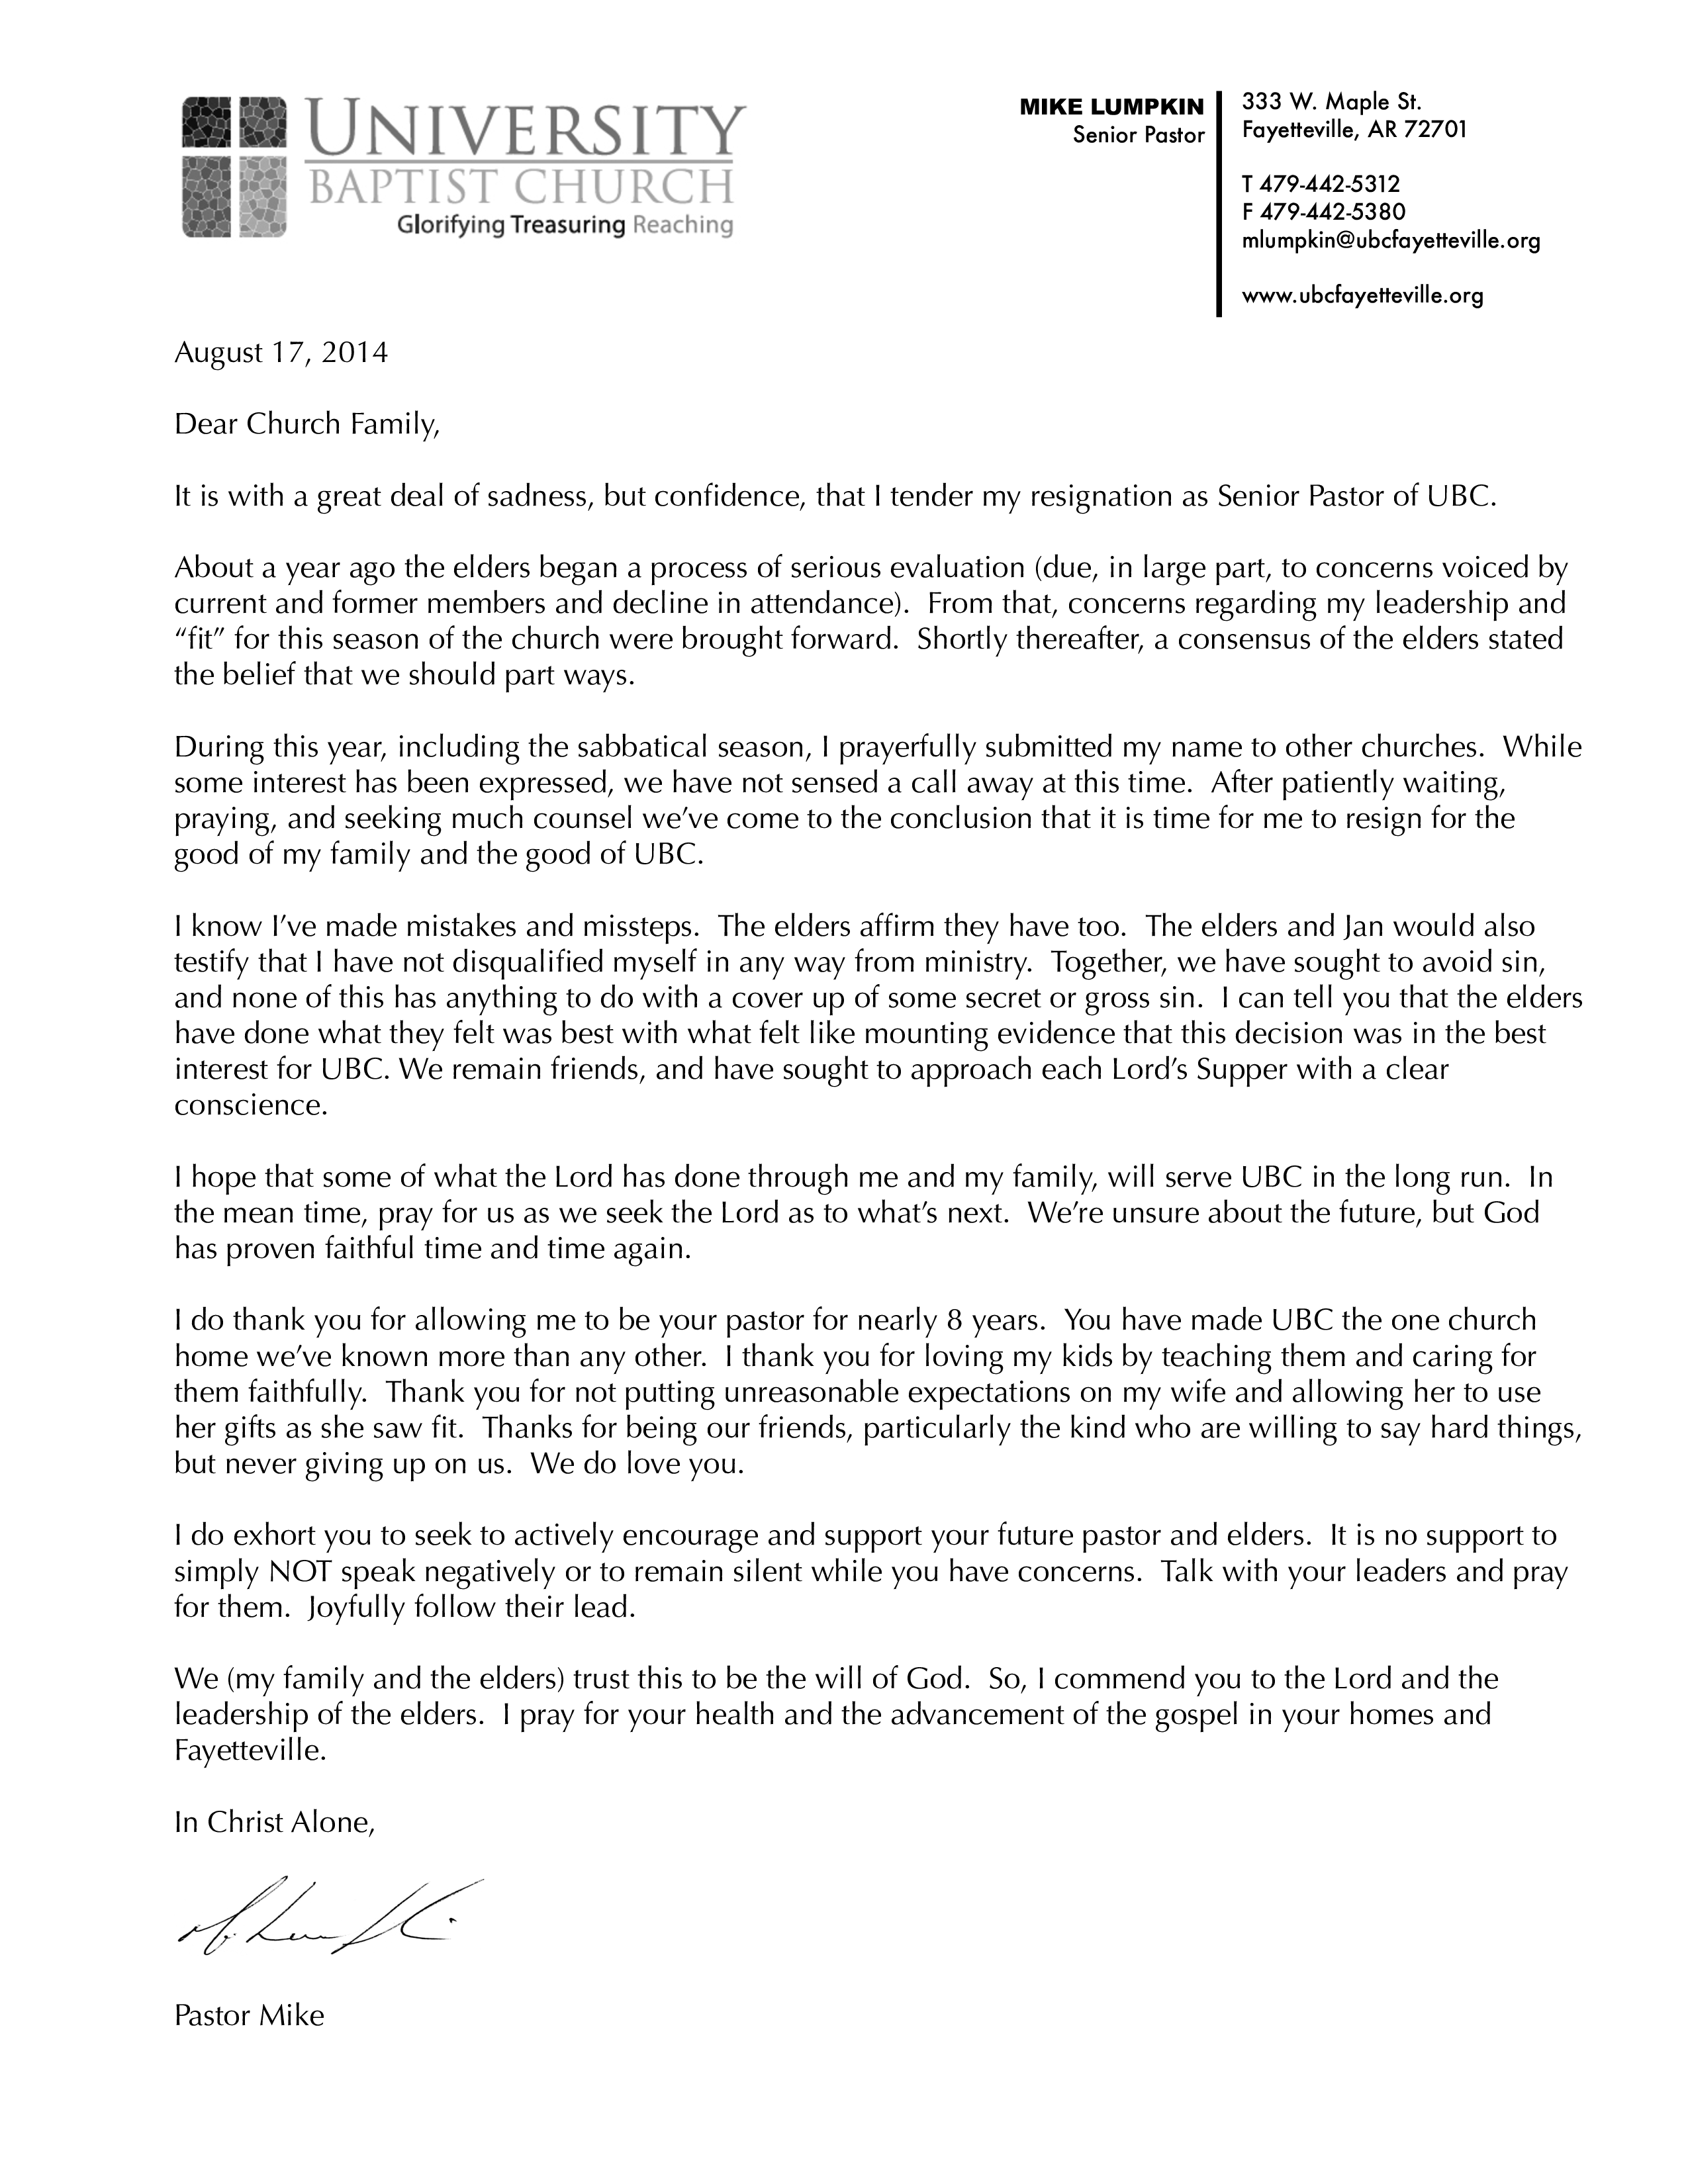 Senior Church Pastor Resignation Letter main image